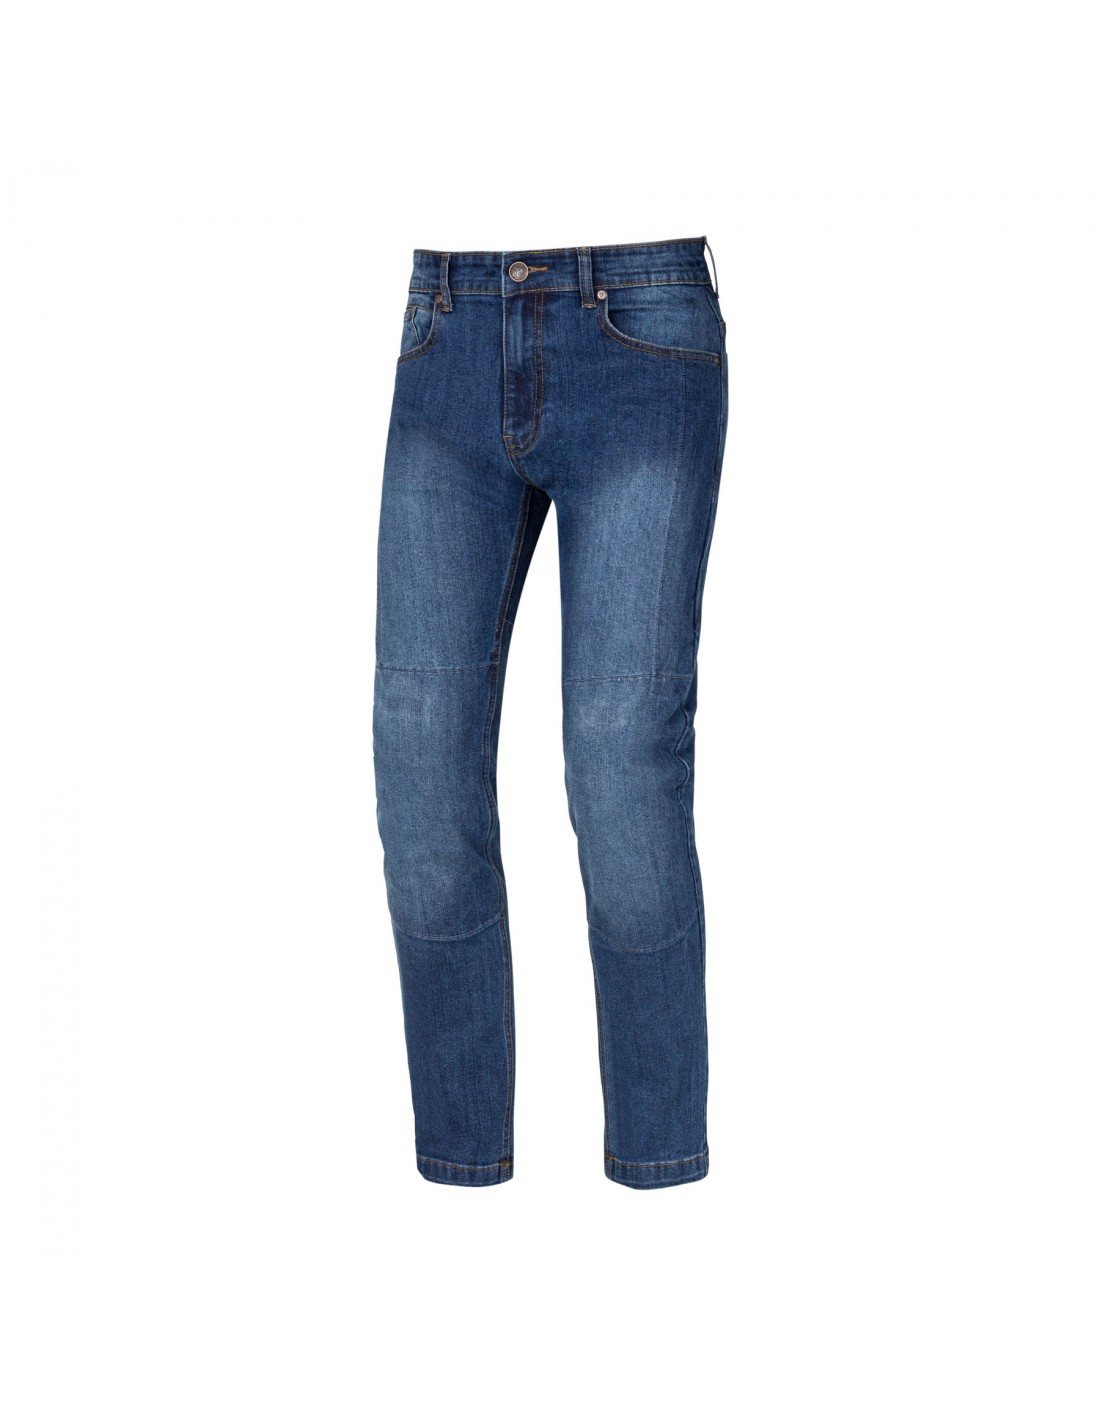 Spodnie Jeans SECA Stroke III Blue